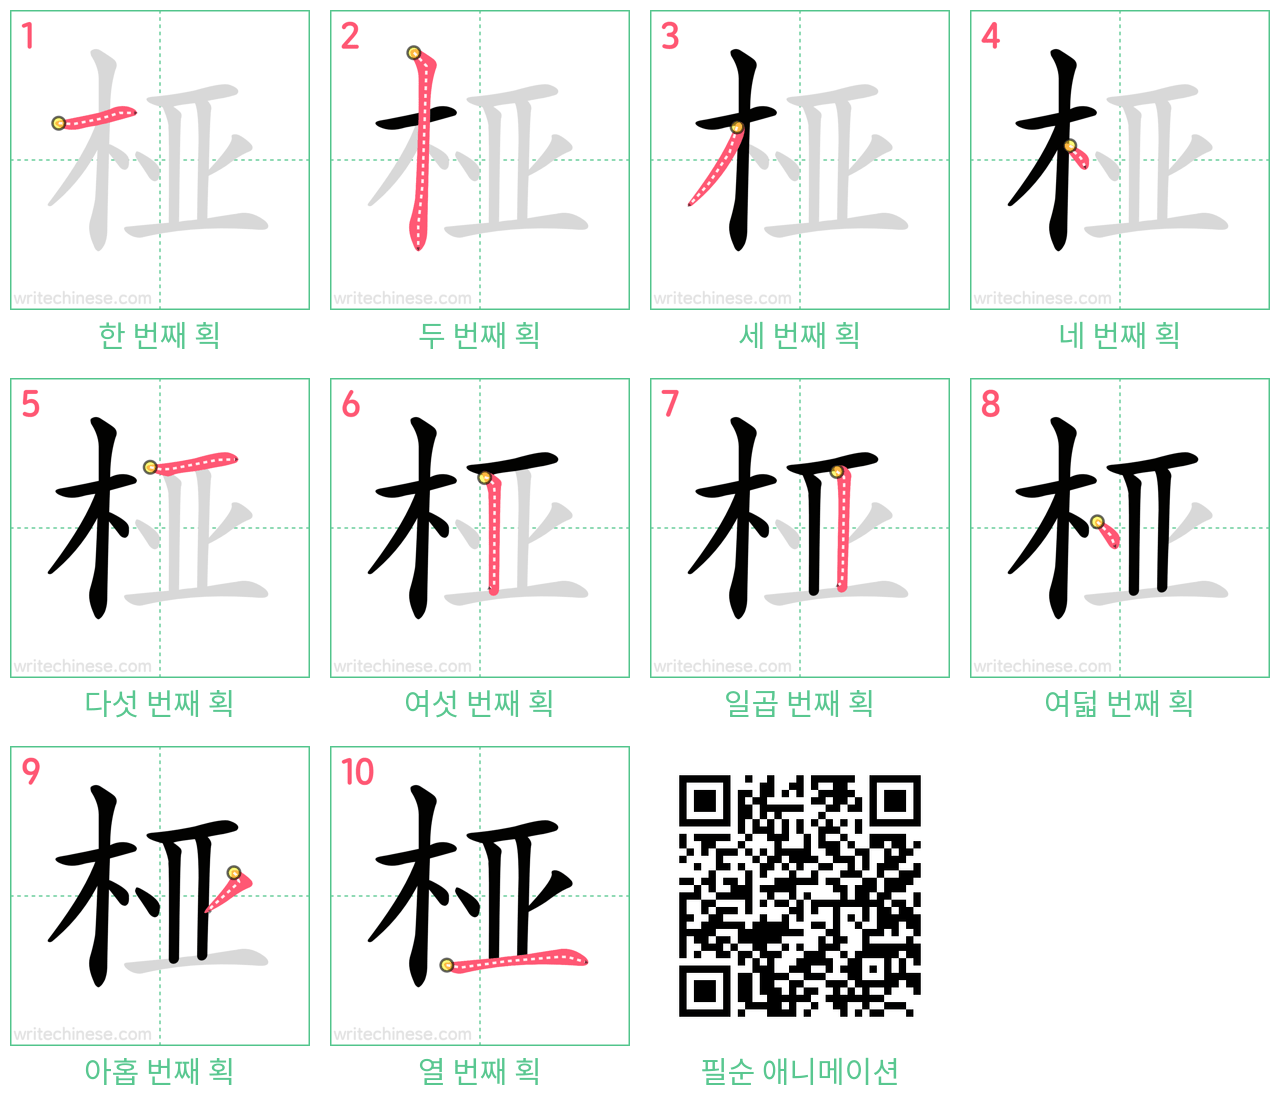 桠 step-by-step stroke order diagrams